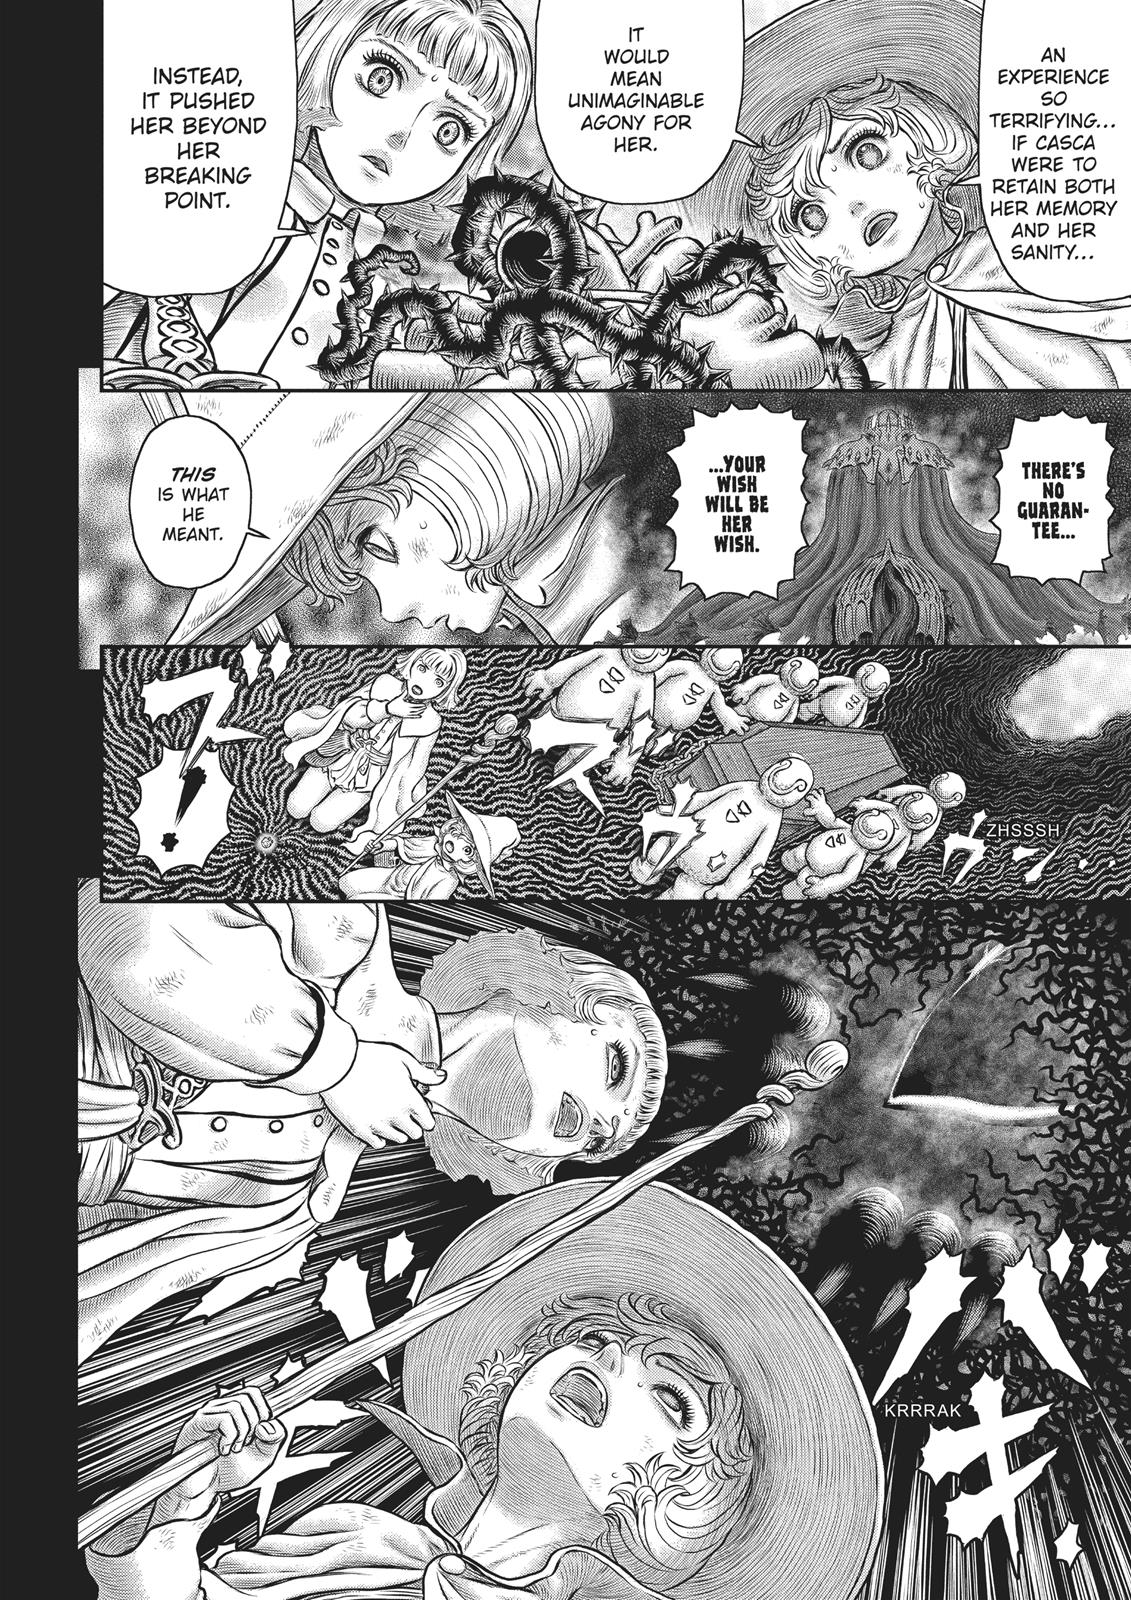 Berserk Manga Chapter 354 image 08